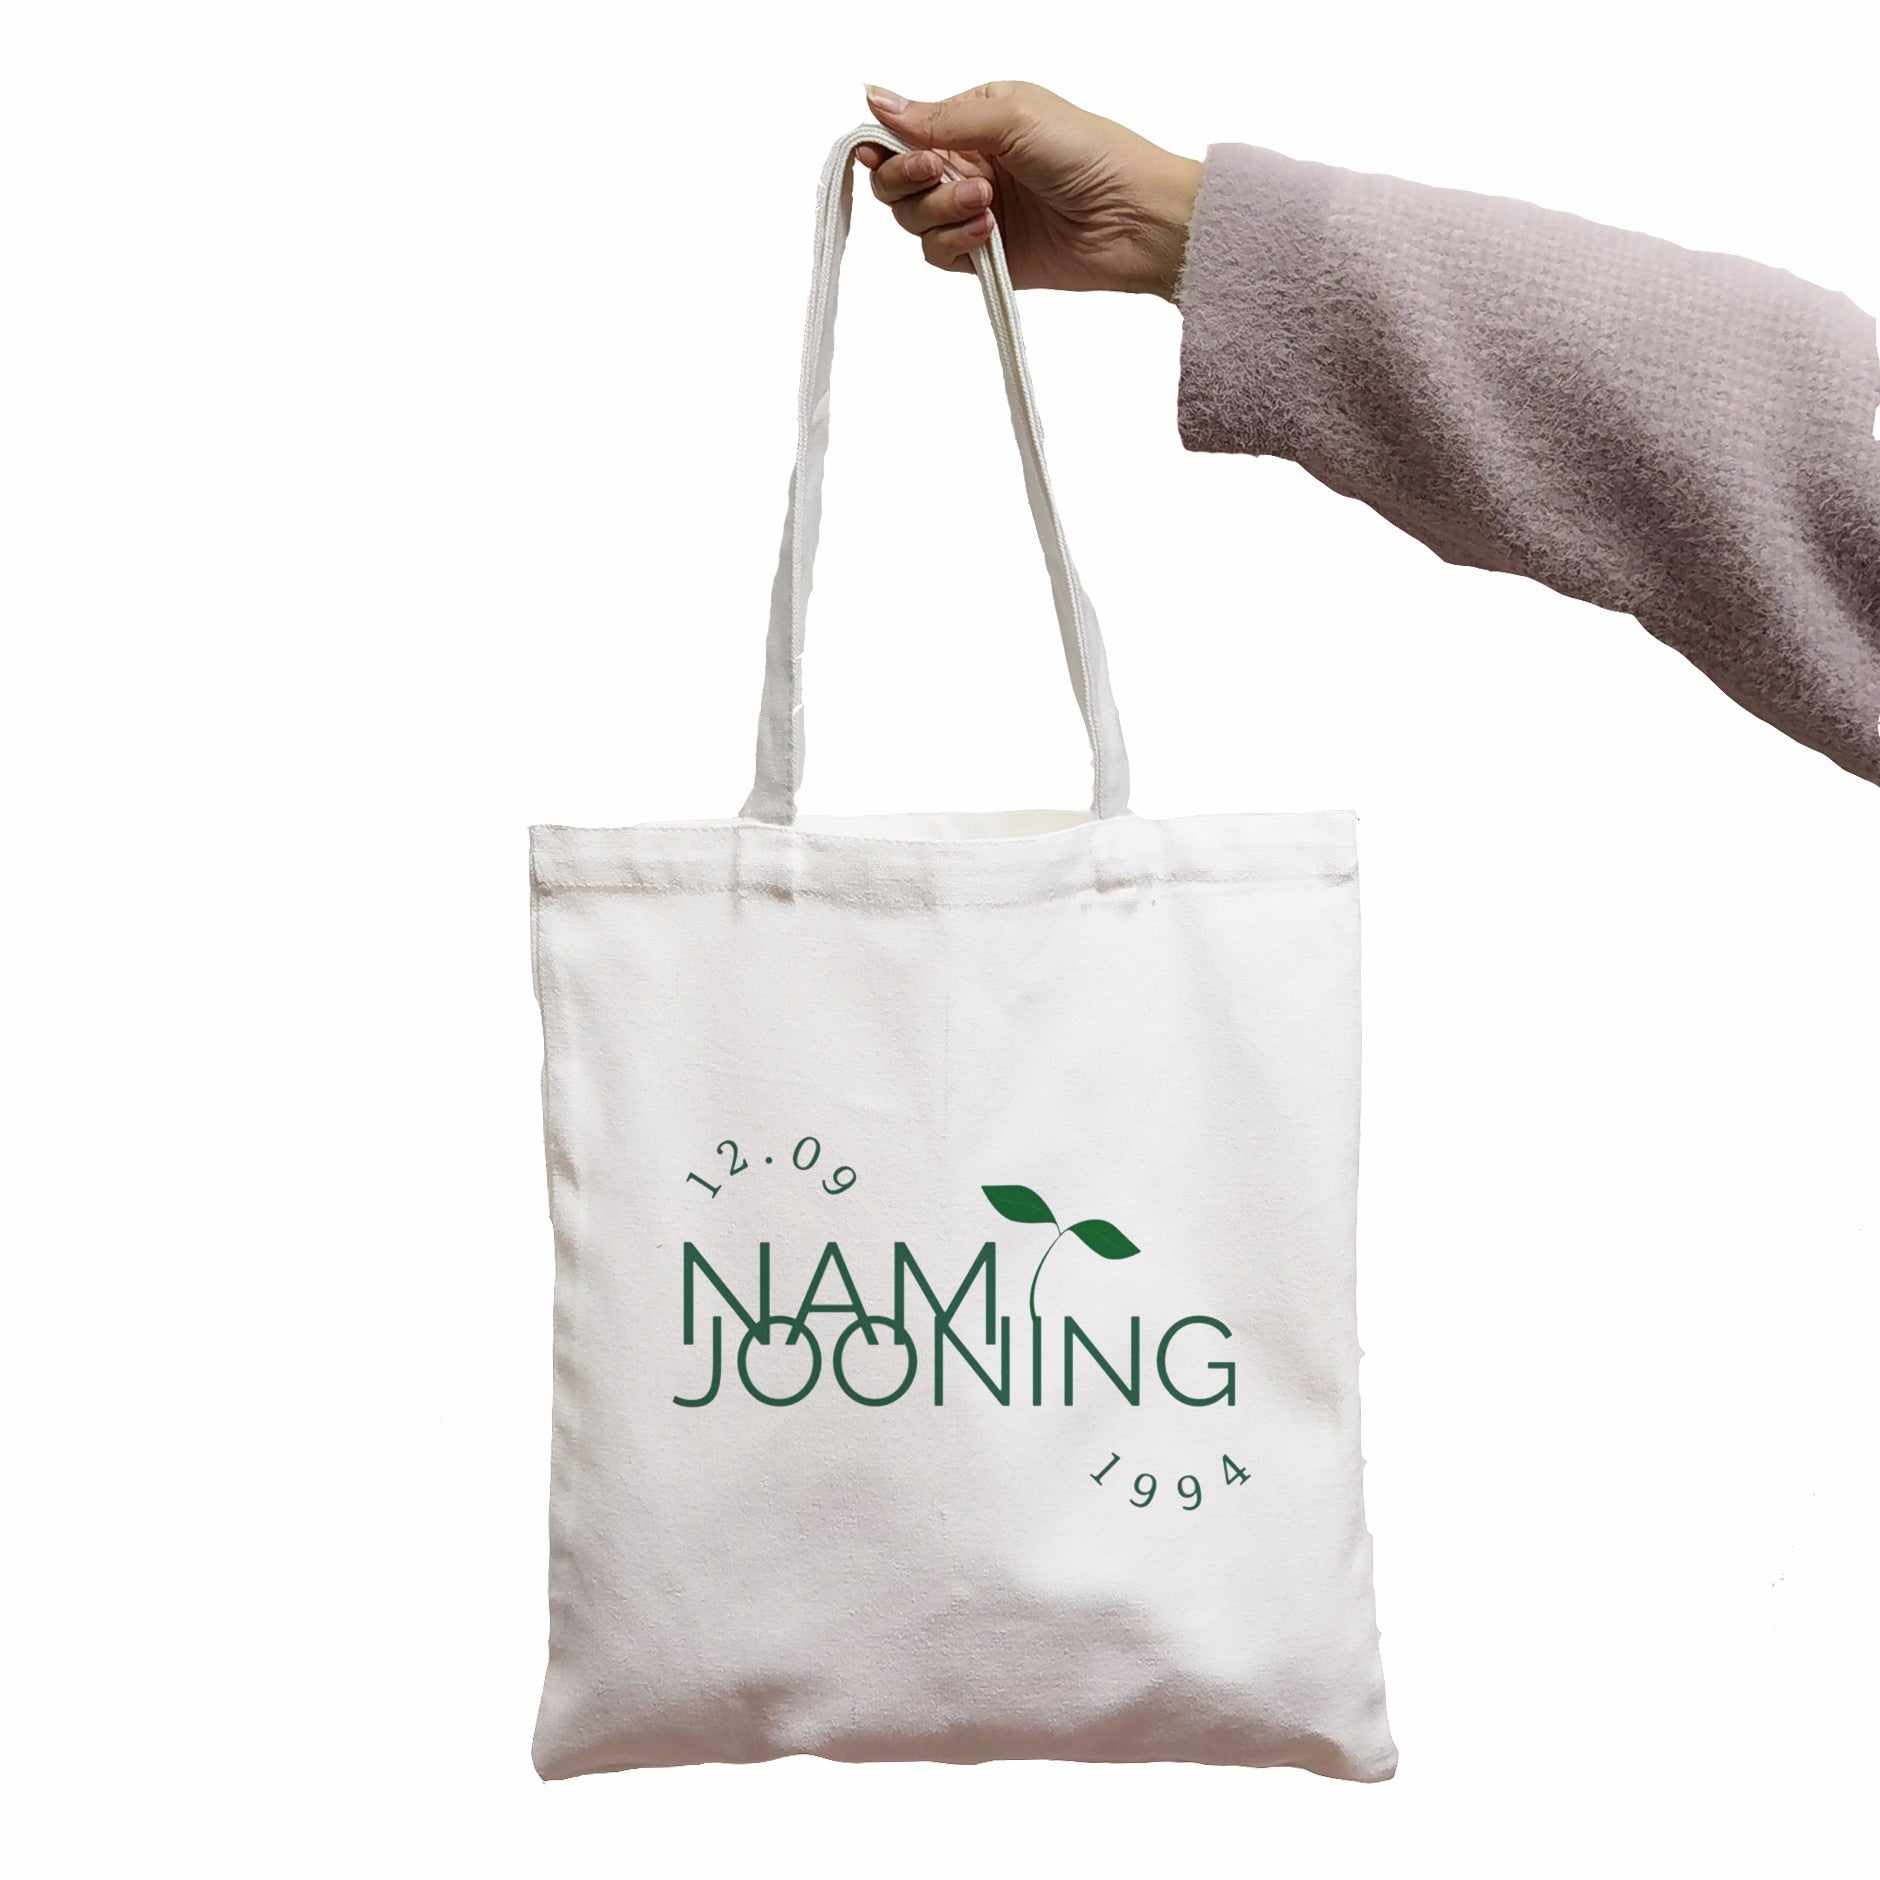 Namjoon "Namjooning" Harajuku Tote Bag